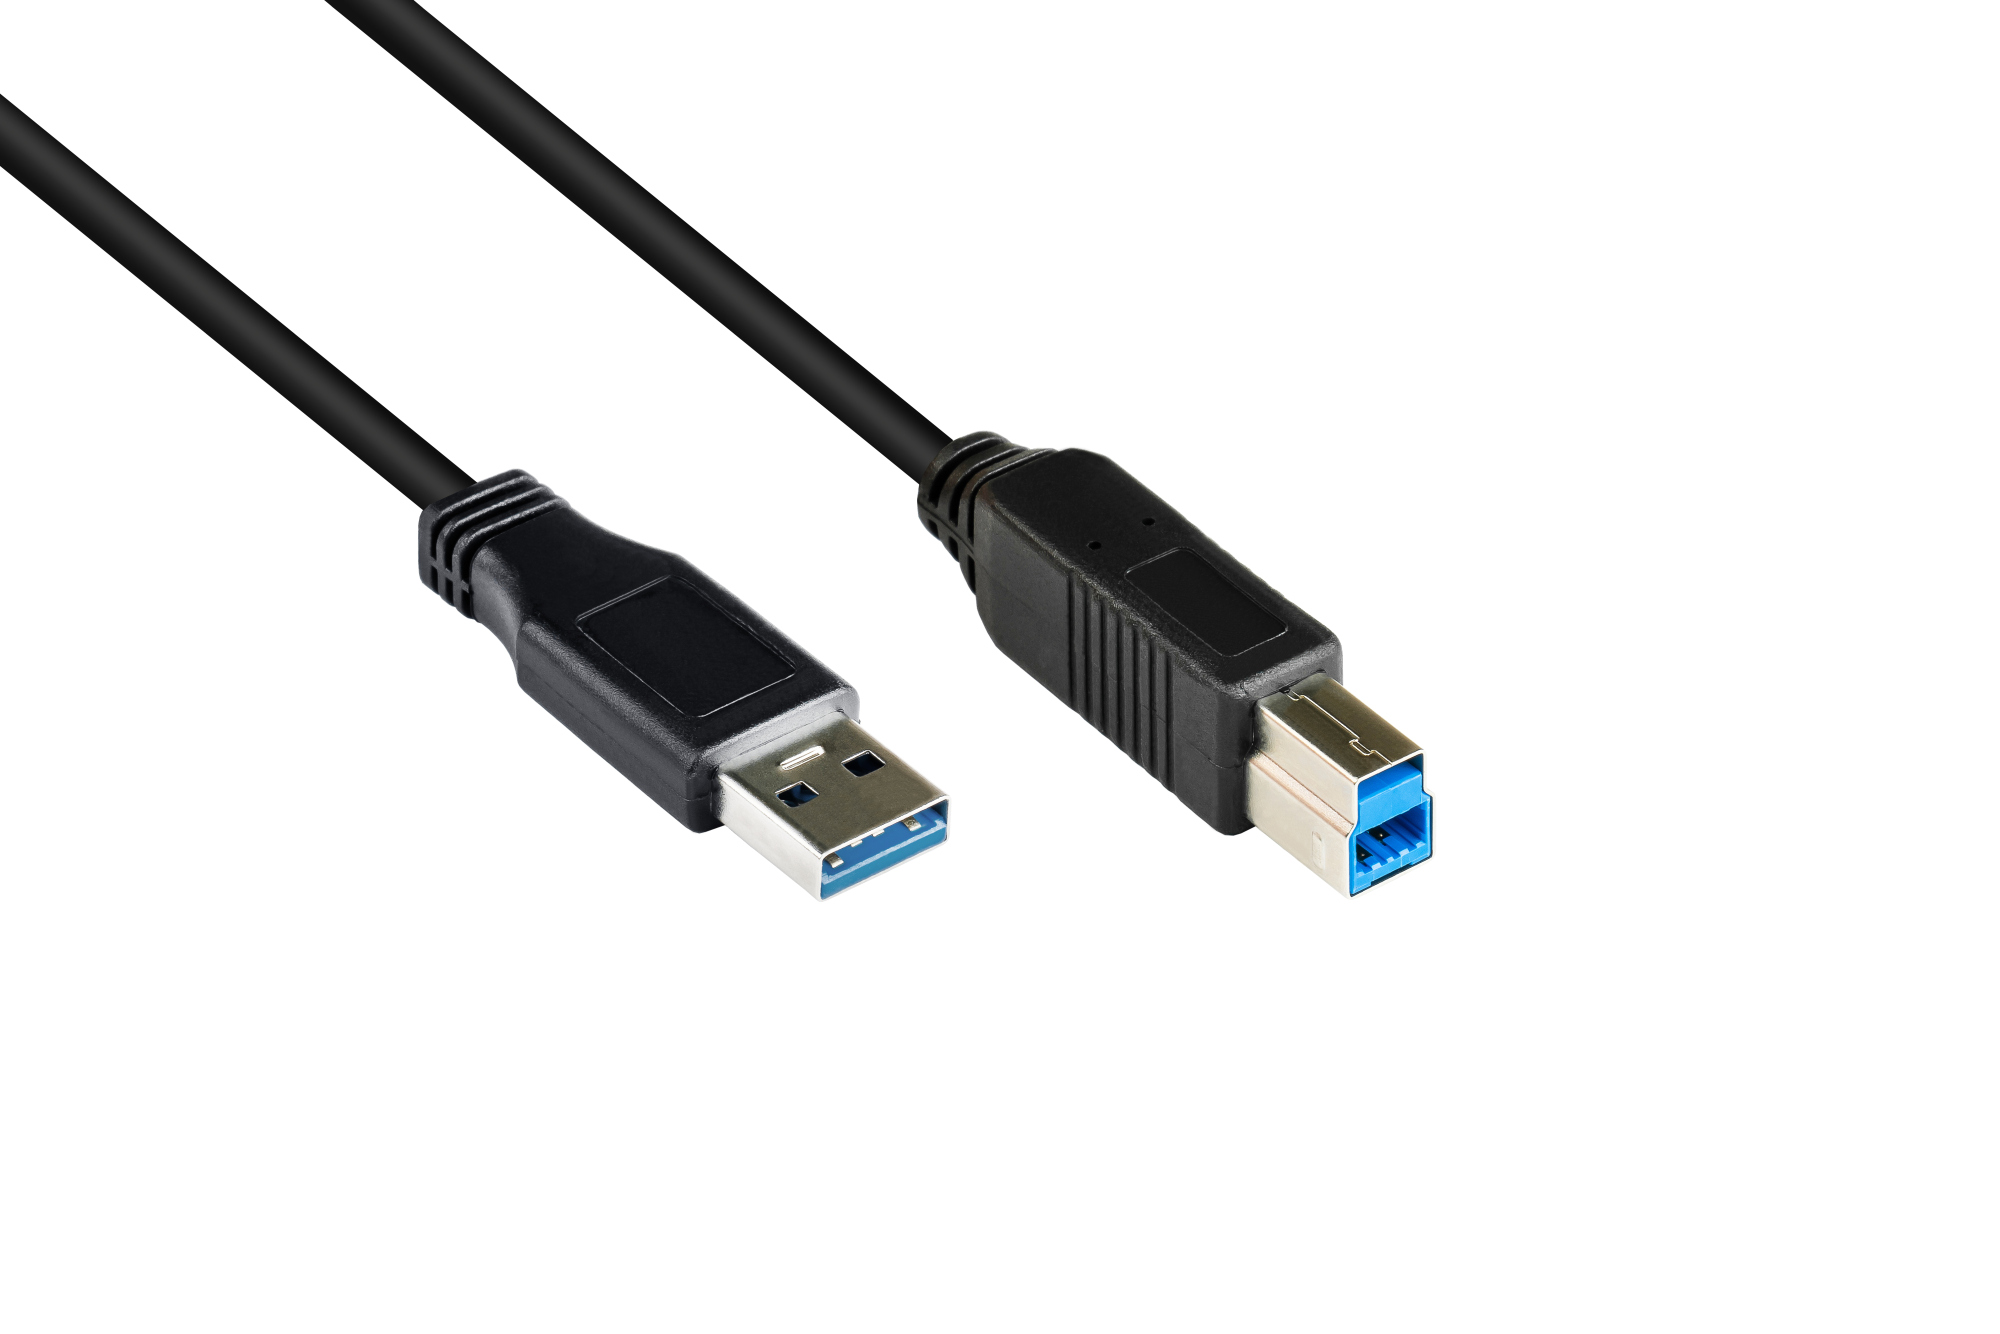 Anschlusskabel USB 3.0 Stecker A an Stecker B, schwarz, 0,2m, Good Connections®